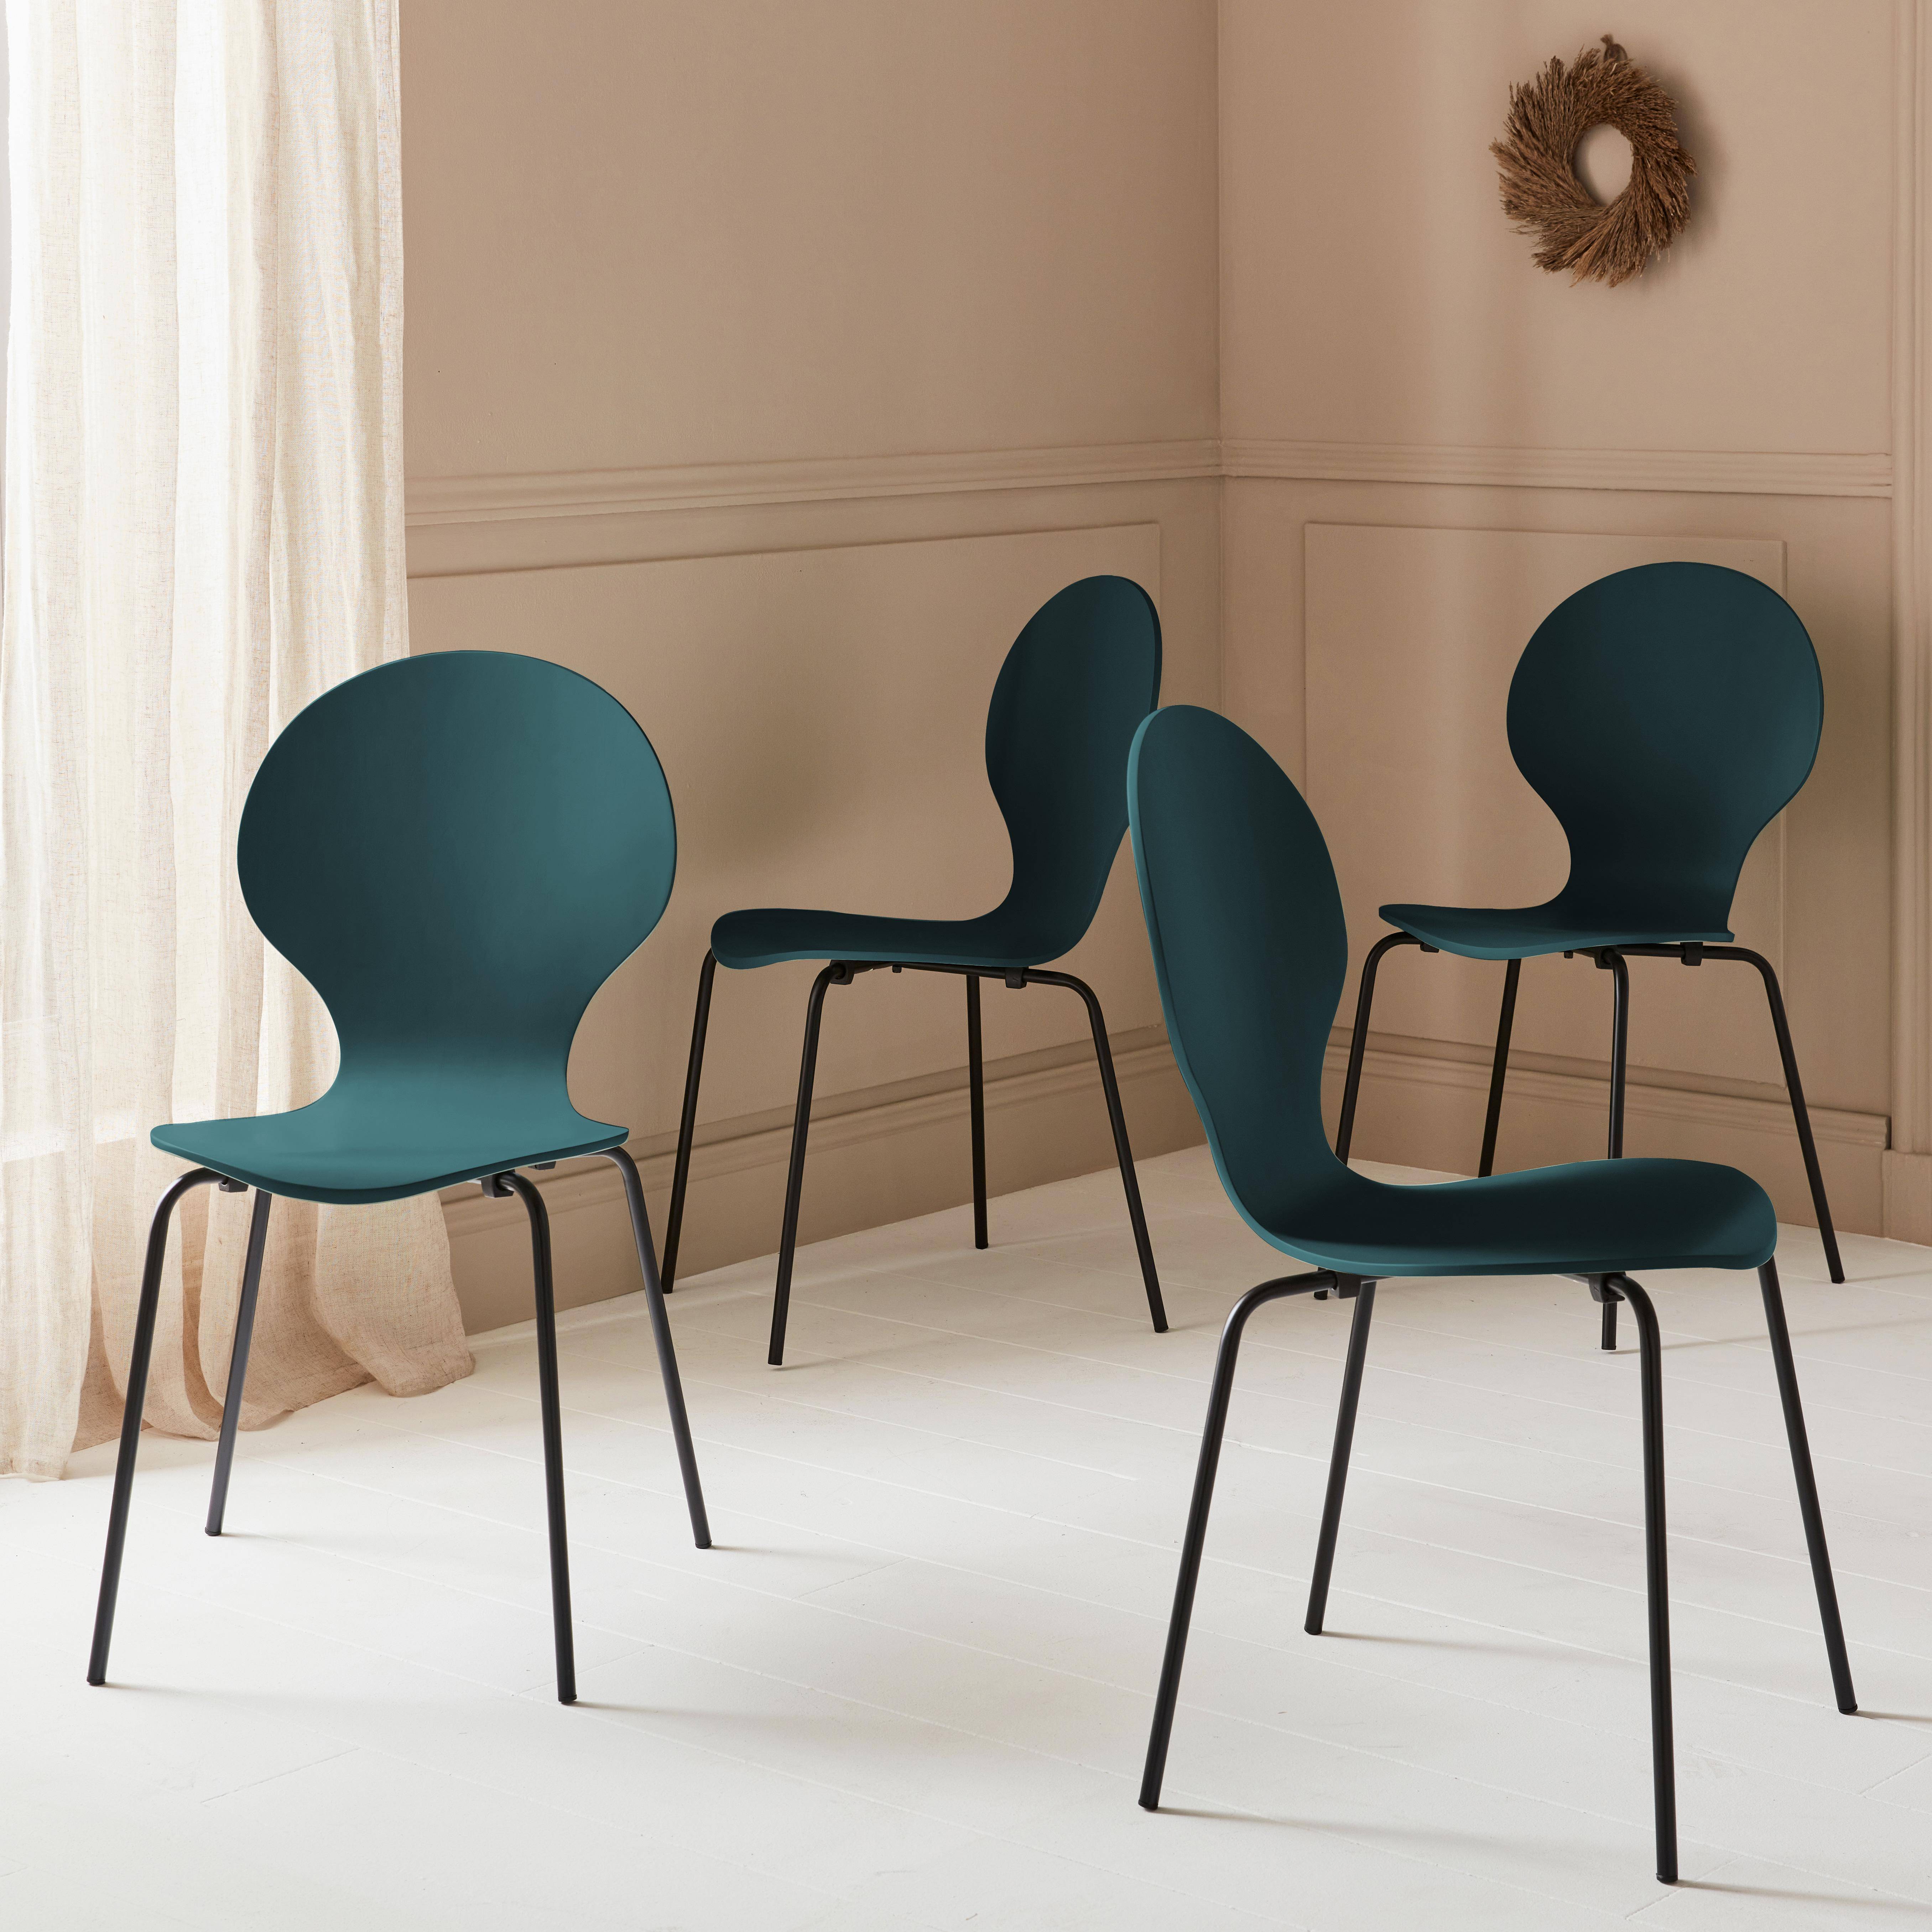 4er Set stapelbare Retro-Stühle in blau, Hevea-Holz und Sperrholz, Beine aus Stahl, Naomi, B 43 x T 48 x H 87cm Photo2